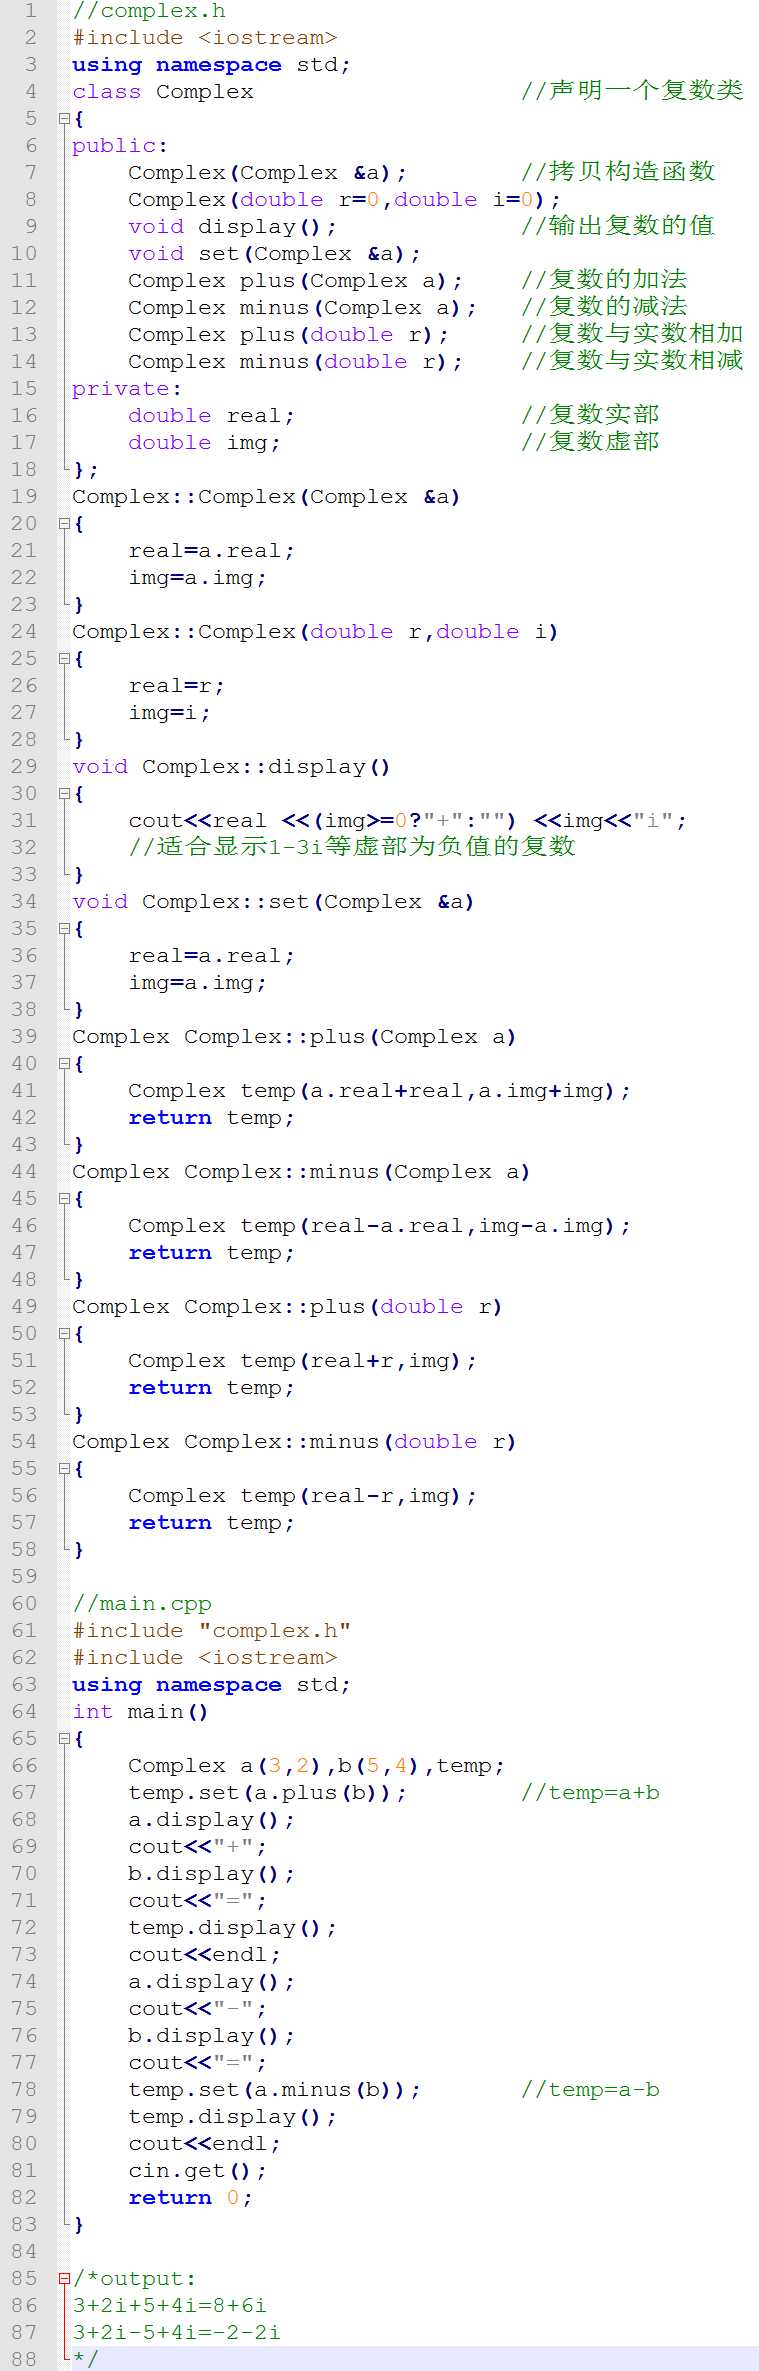 c操作符重载的例子_c++中不能重载的运算符